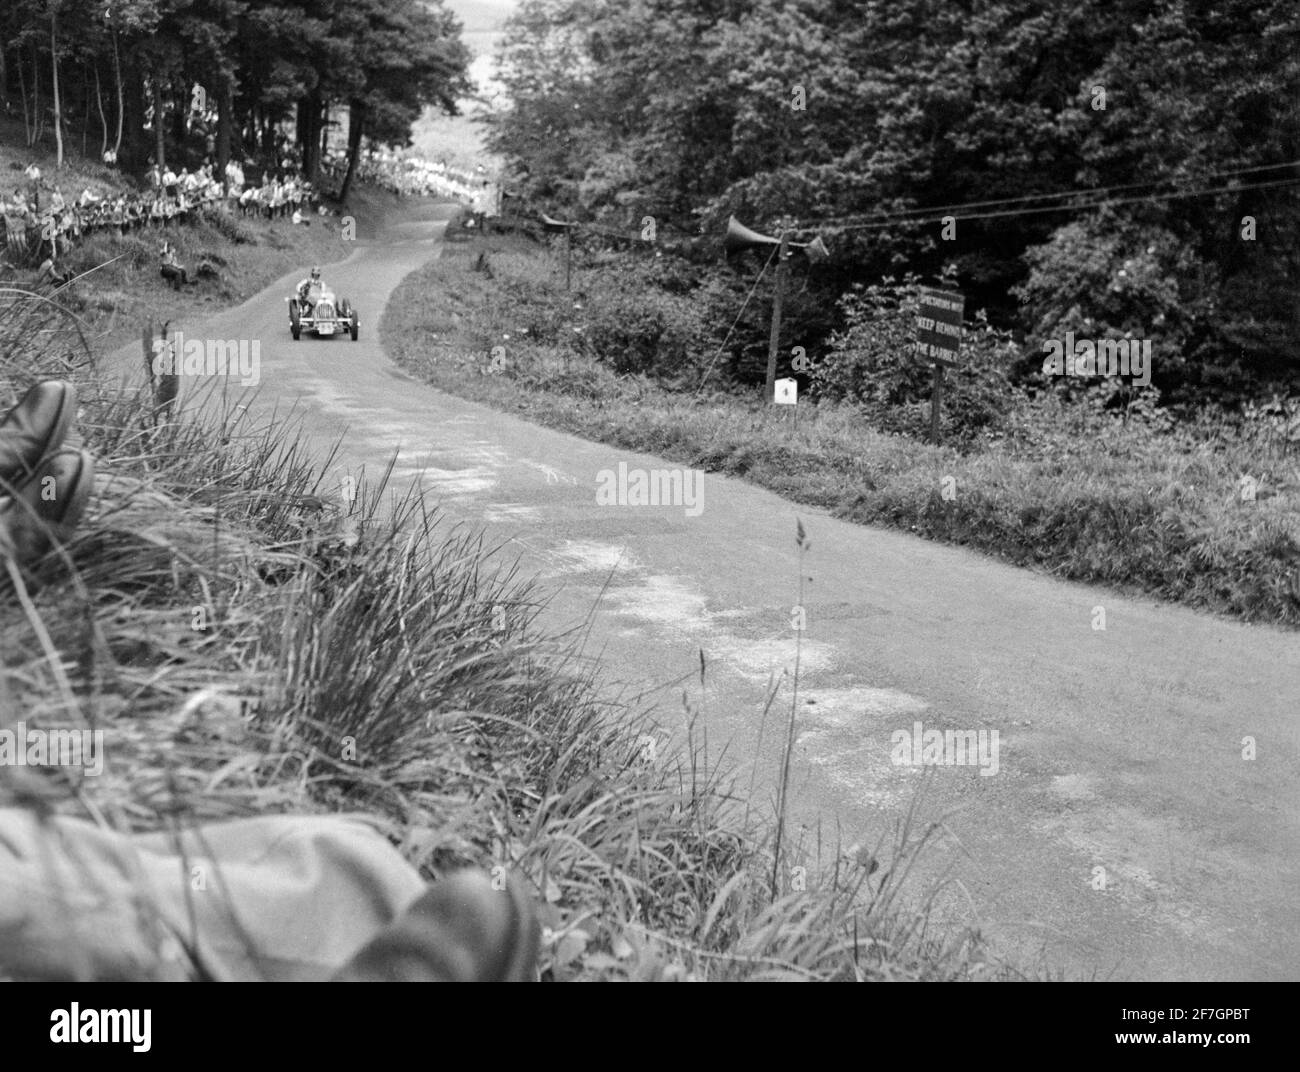 Vintage Schwarz-Weiß-Fotografie, aufgenommen 1950 auf der Rennstrecke Shelsley Walsh Hill Climb in England. Fahrer R. D. Poole fährt einen Alfa 3800(S). Stockfoto